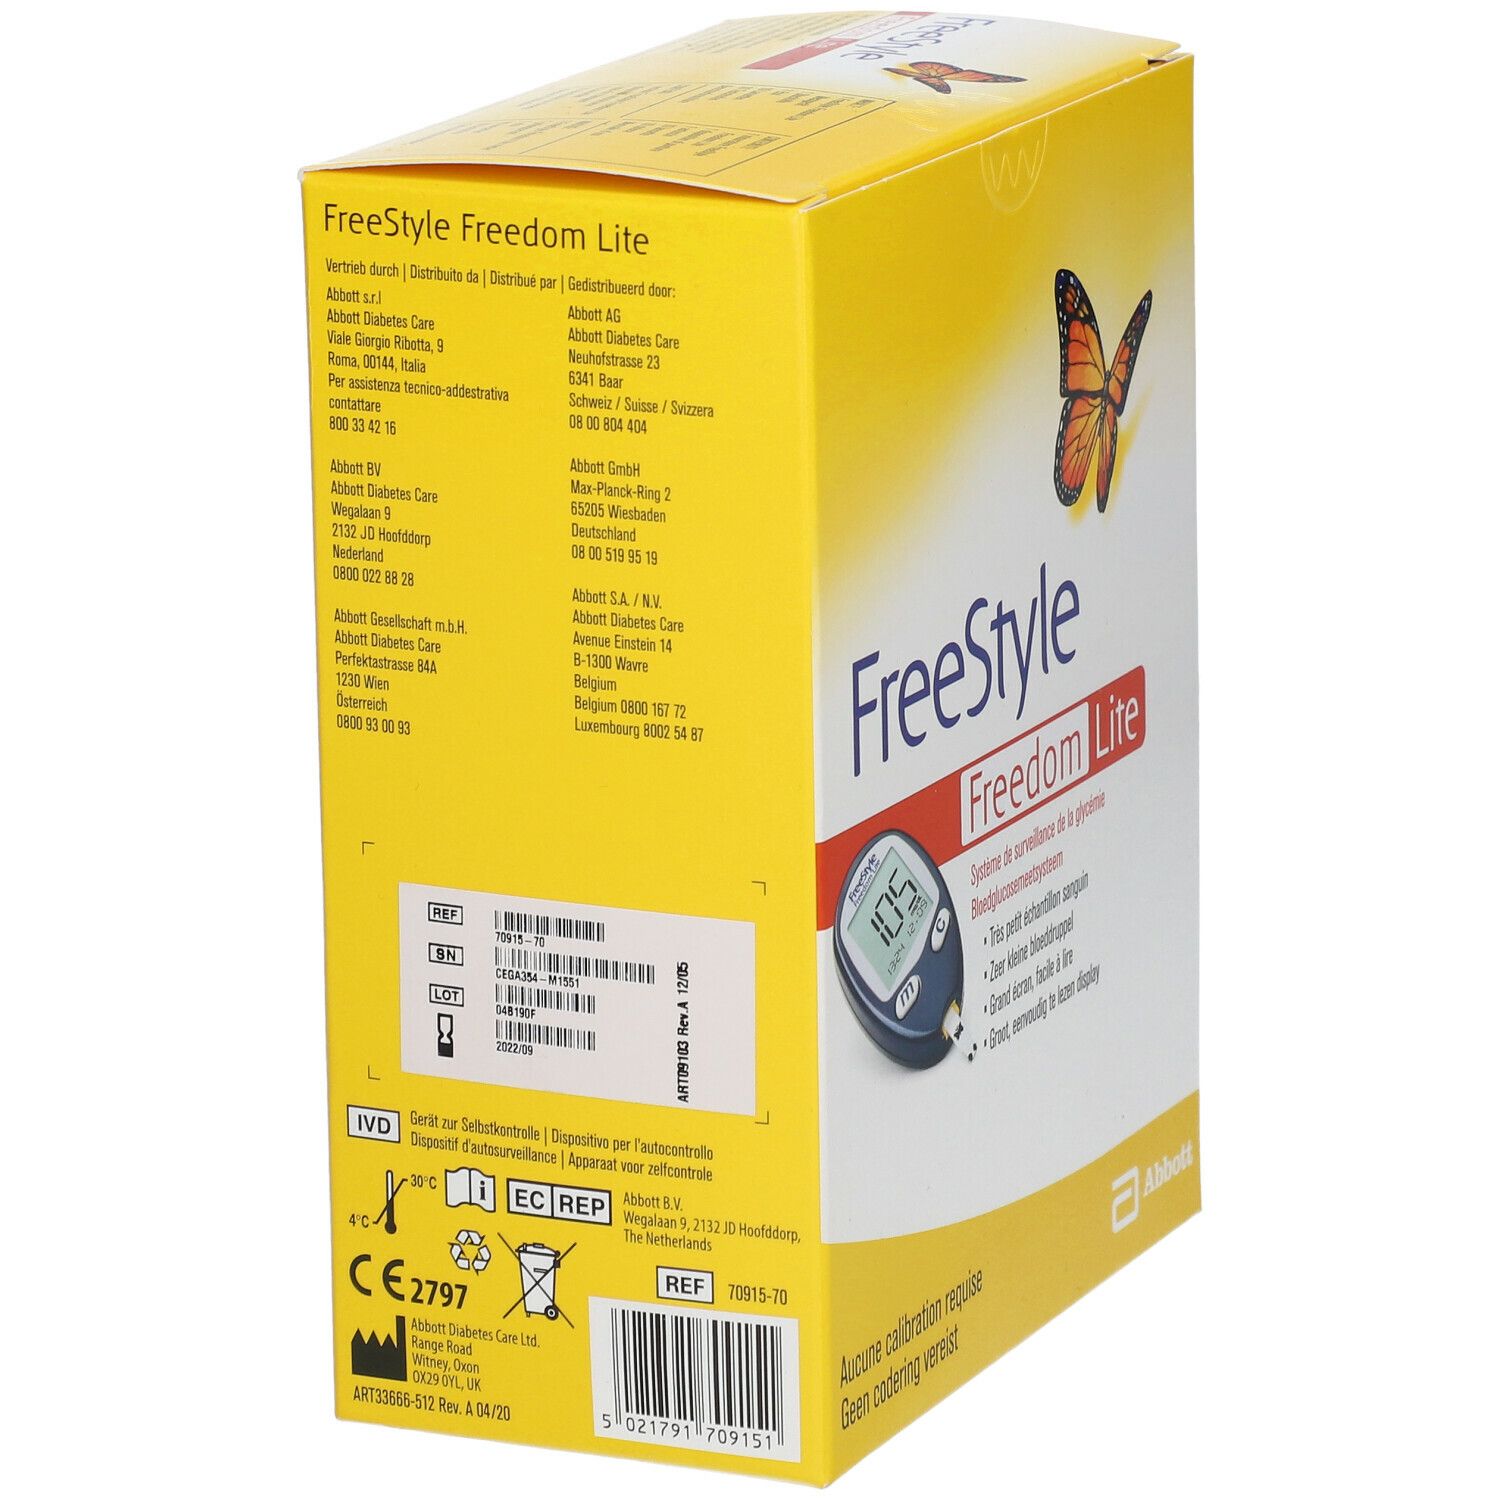 FreeStyle Freedom Lite Sensor Start Kit